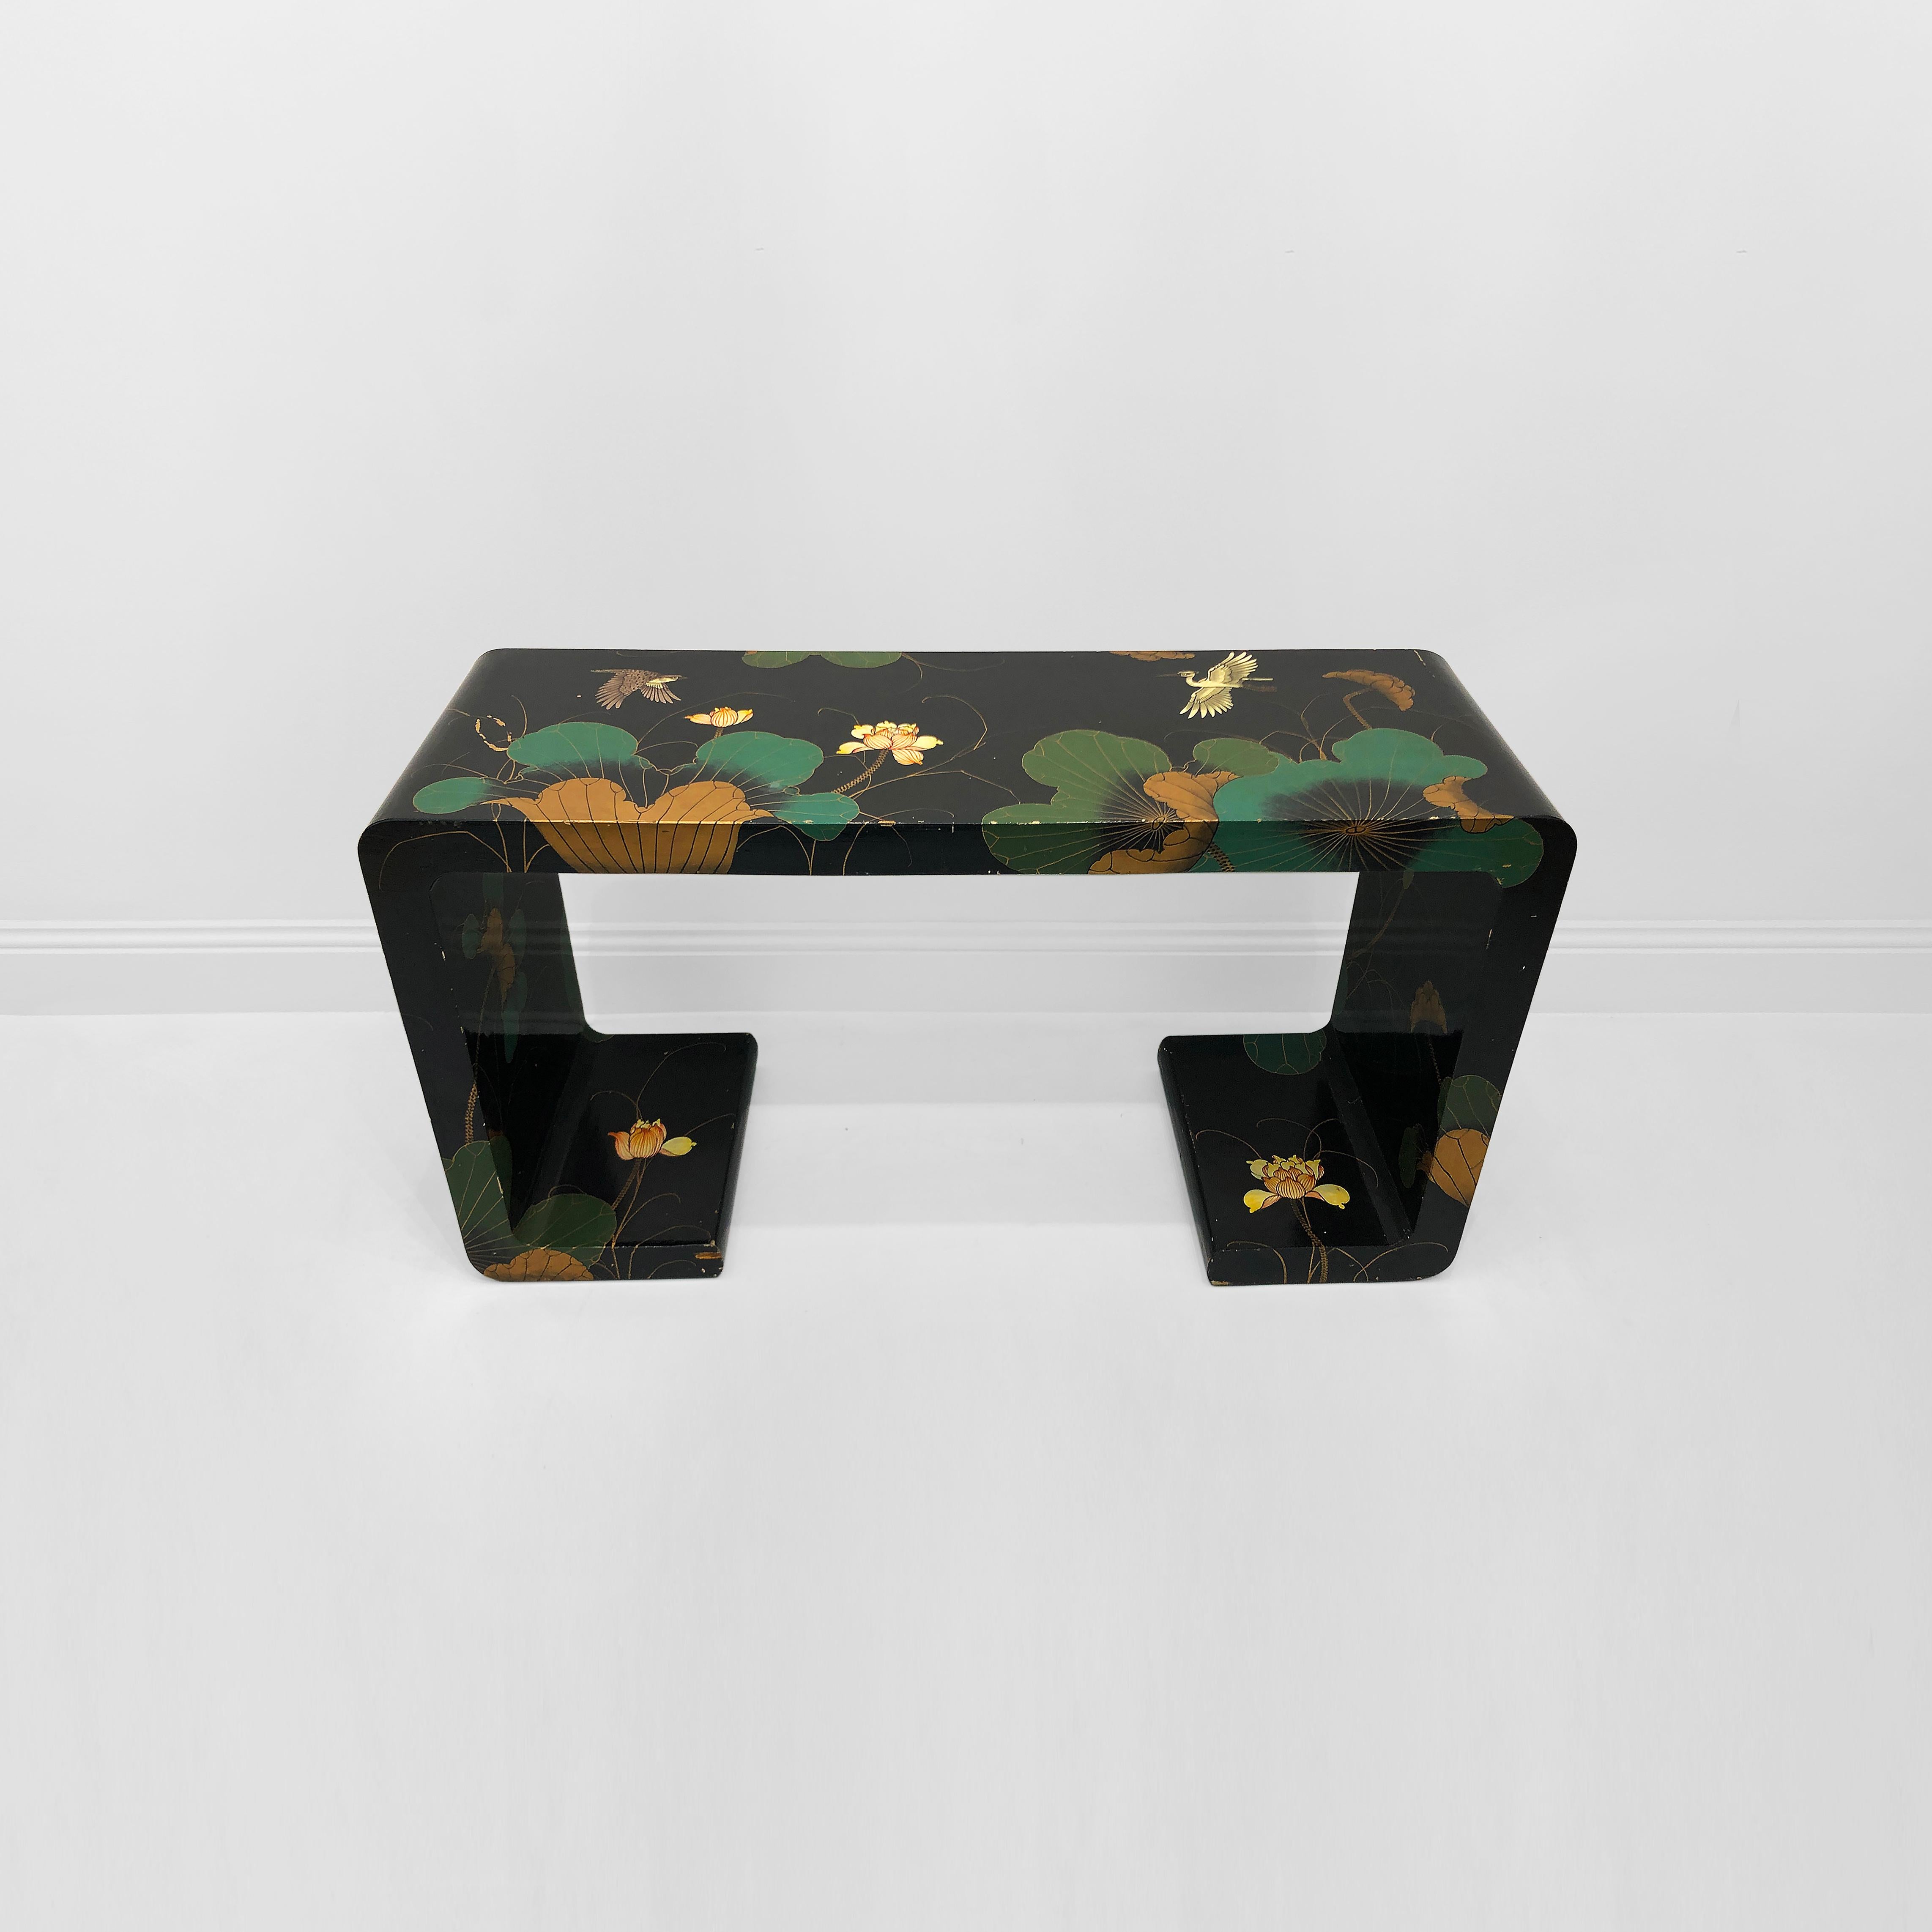 Dieser Chinoiserie-Konsolentisch aus den 1970er Jahren ist ein bemerkenswertes Möbelstück, das eine Mischung aus Eleganz und exotischem Charme ausstrahlt. Der Konsolentisch hat eine schlanke, organische Form mit Wasserfall-Seiten und -Boden. Der